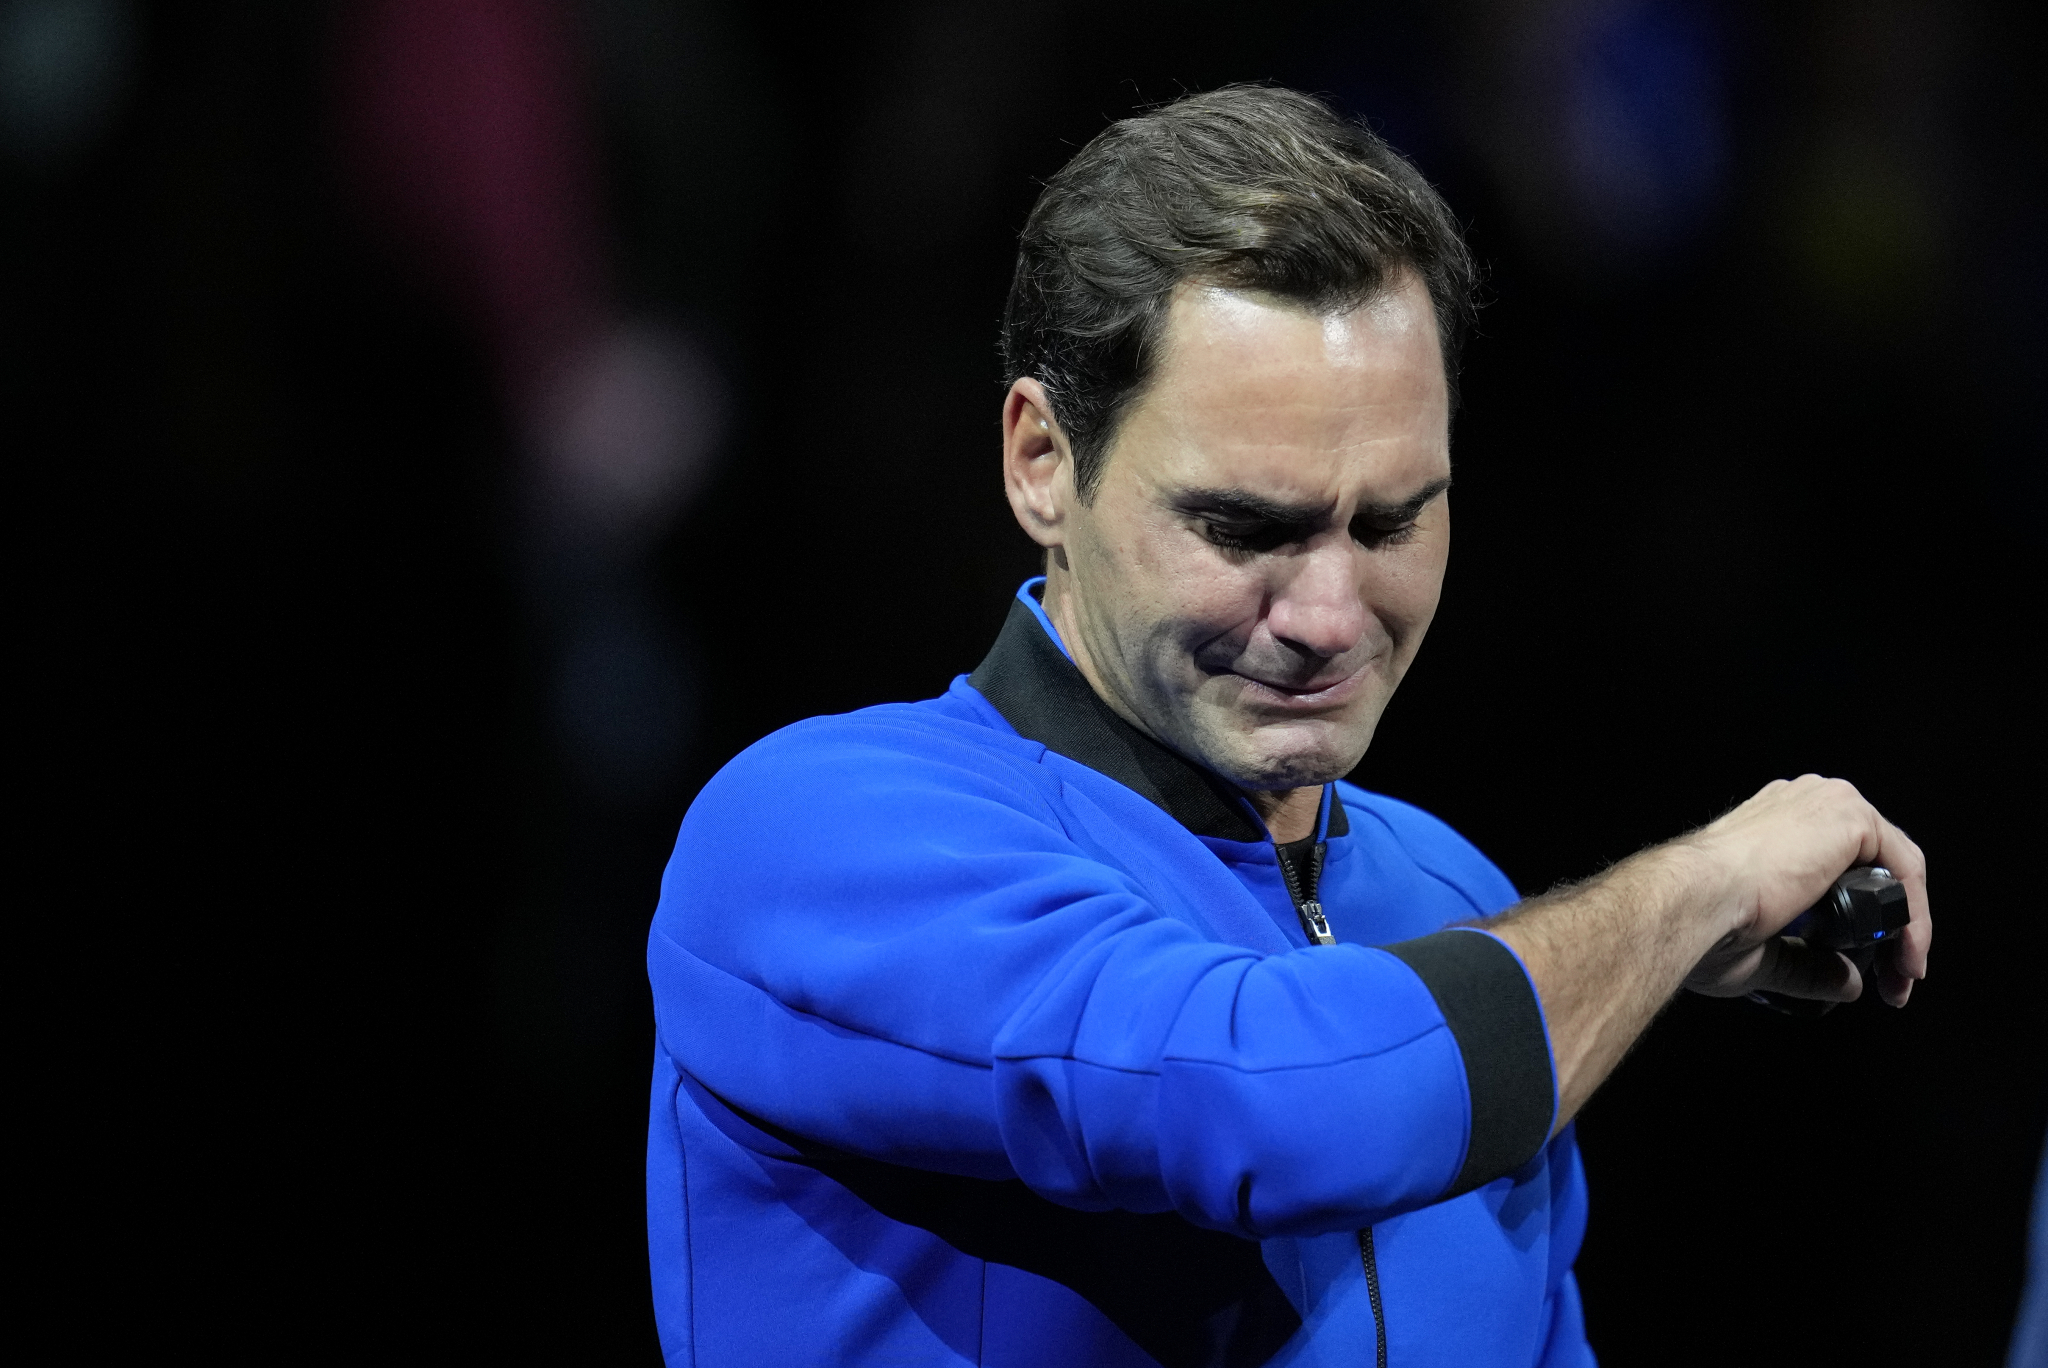 OVO NIJE KRAJ Emotivan govor Federera na oproštaju (FOTO)